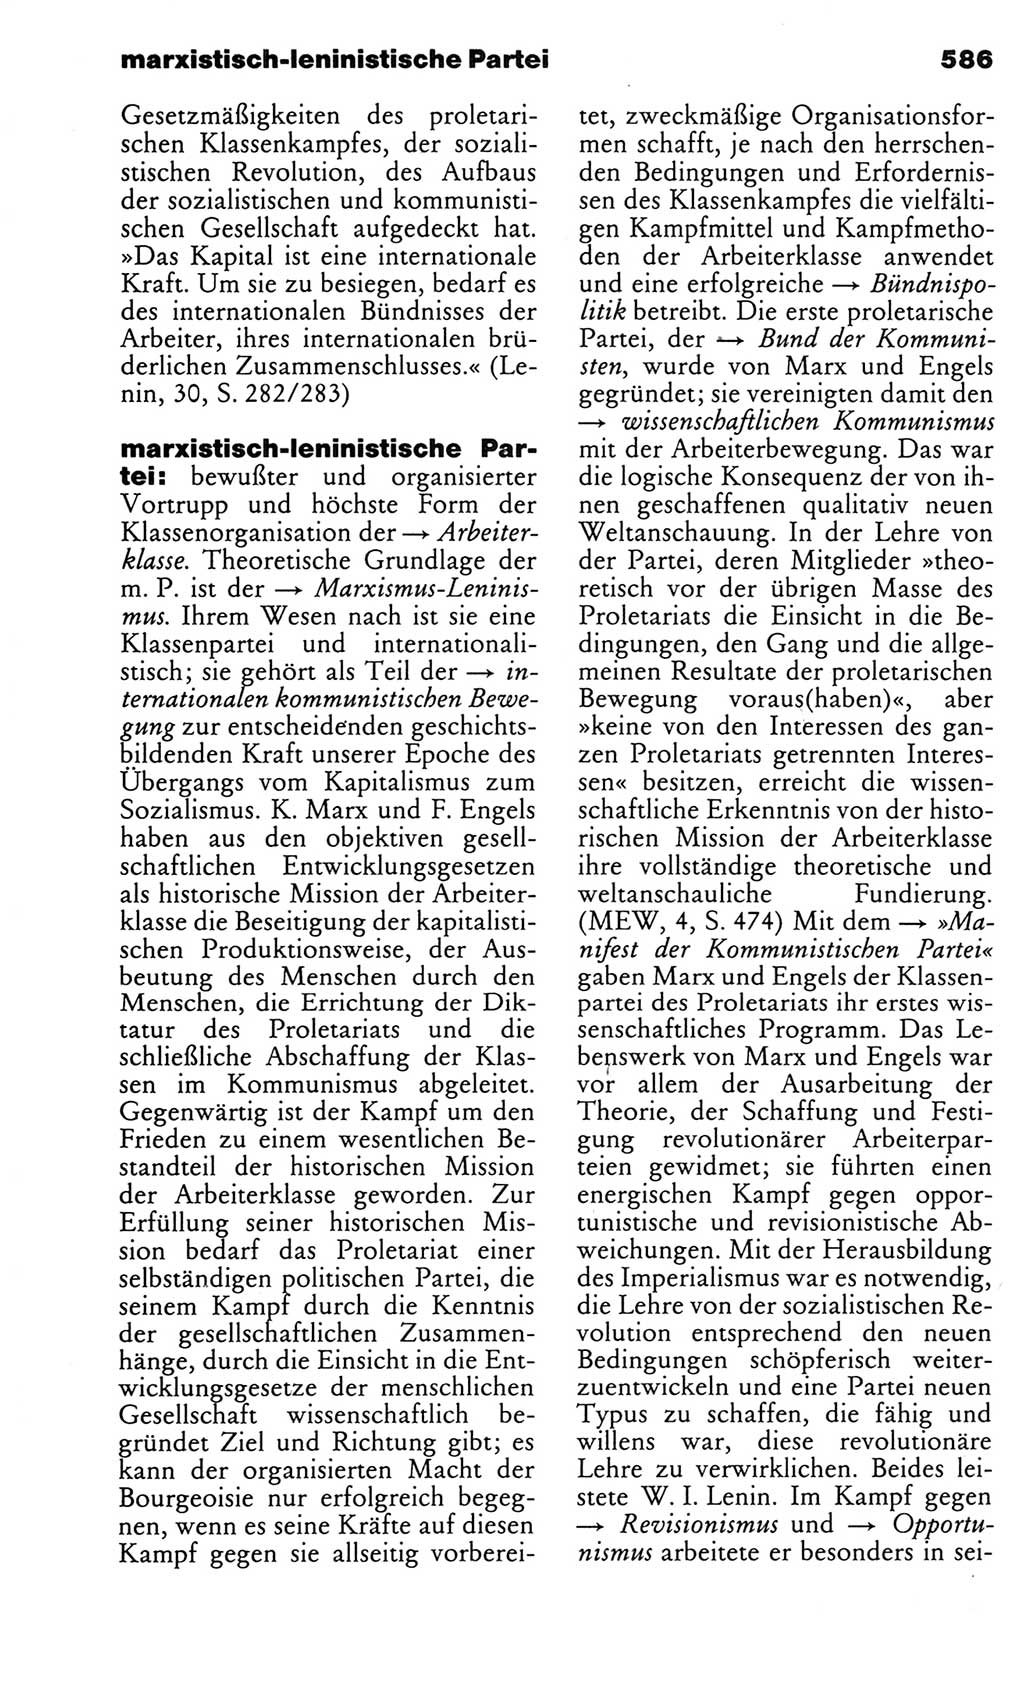 Kleines politisches Wörterbuch [Deutsche Demokratische Republik (DDR)] 1983, Seite 586 (Kl. pol. Wb. DDR 1983, S. 586)